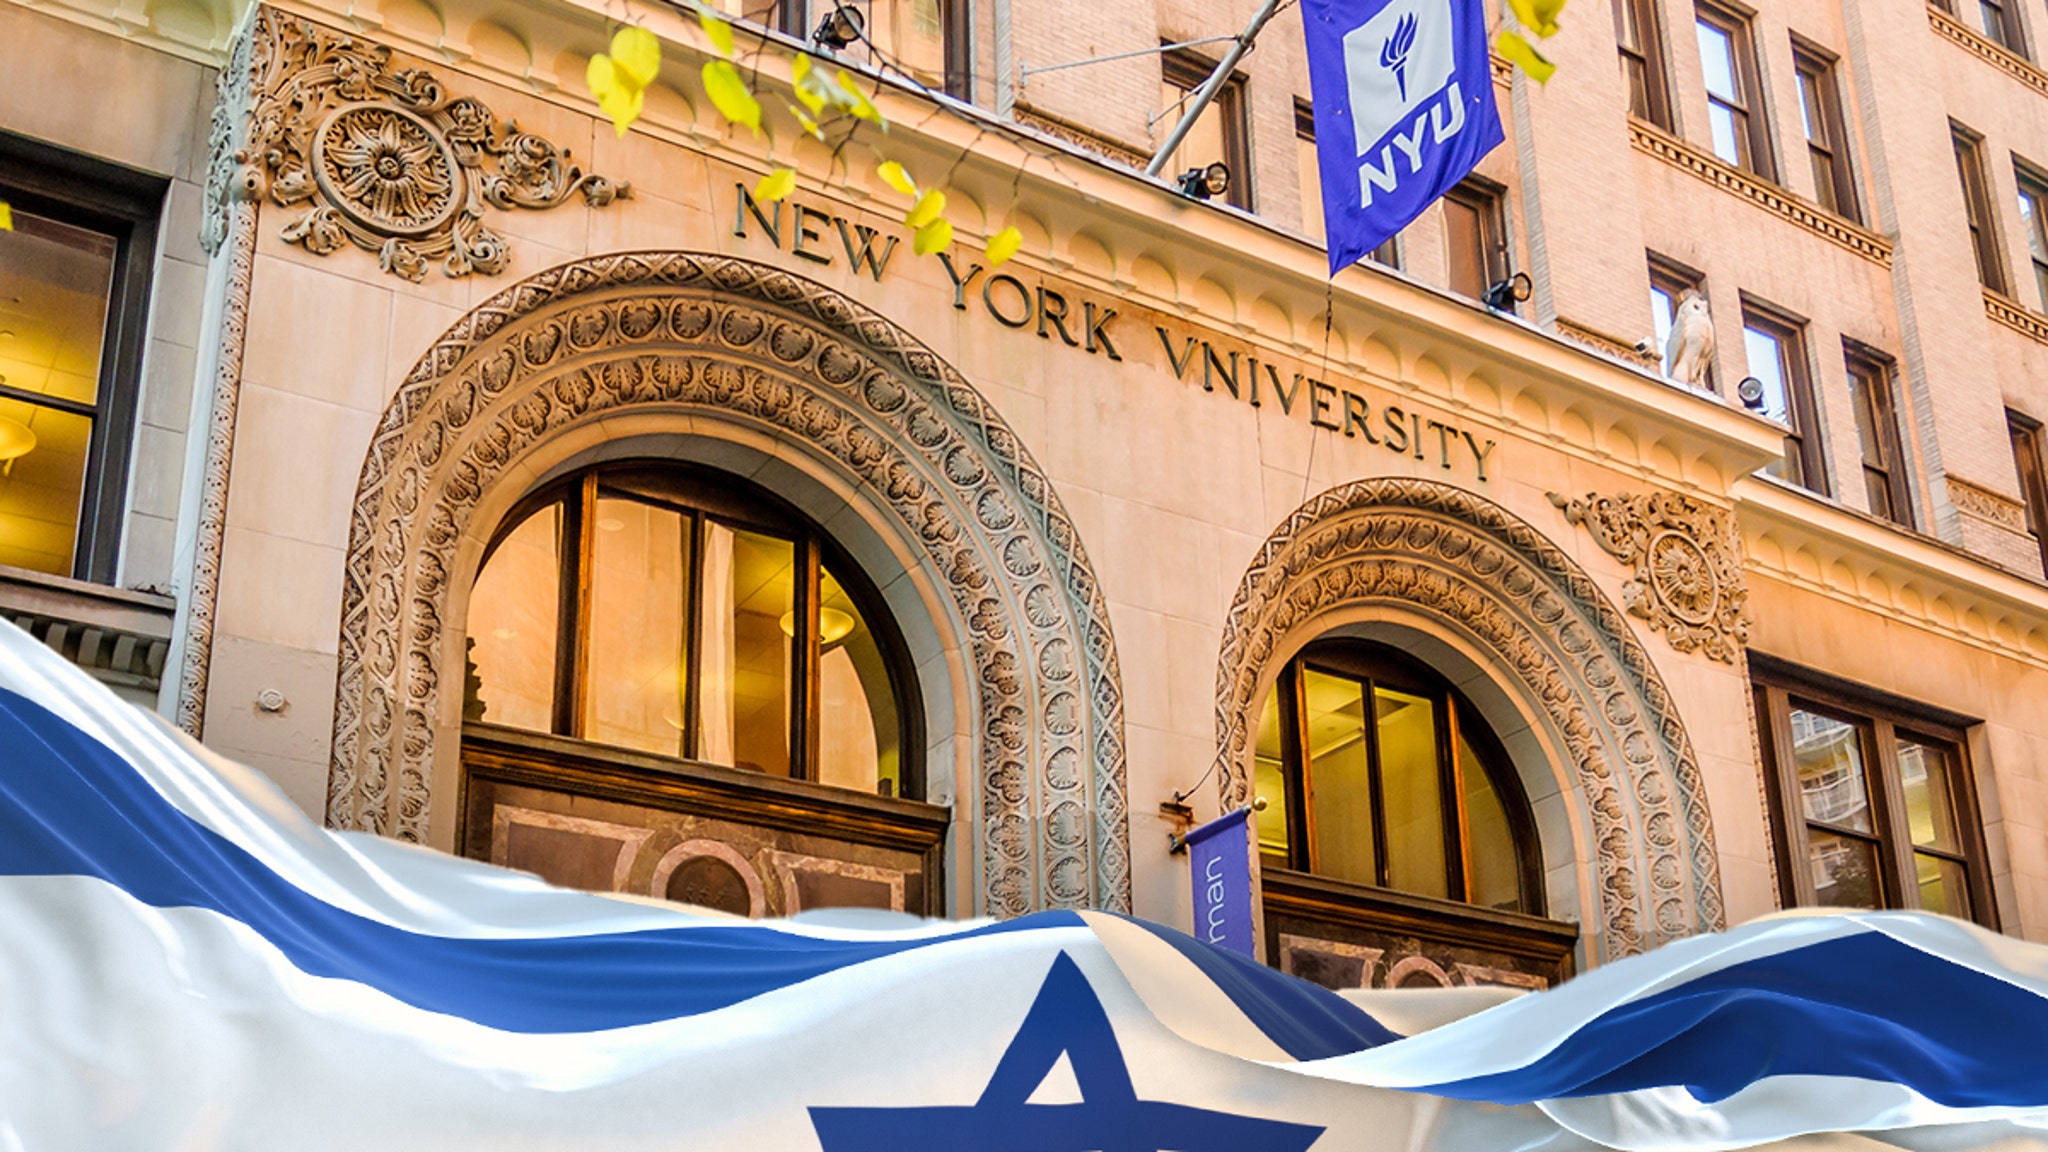 Des étudiants juifs poursuivent NYU pour antisémitisme sur le campus